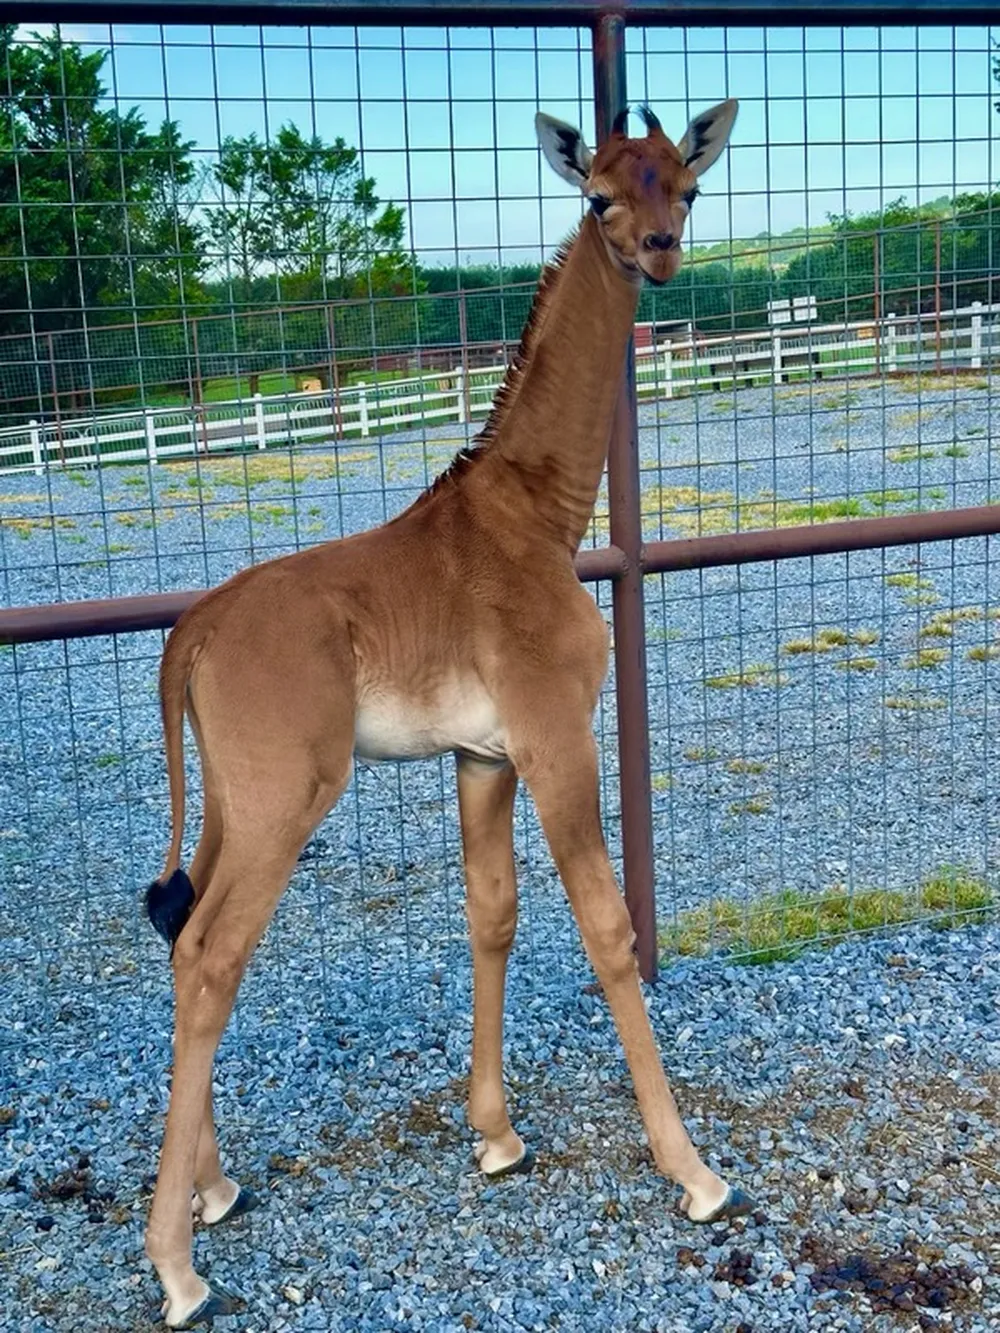 Raridade extraordinária: Girafa sem manchas nasce em zoológico nos EUA, a única no mundo